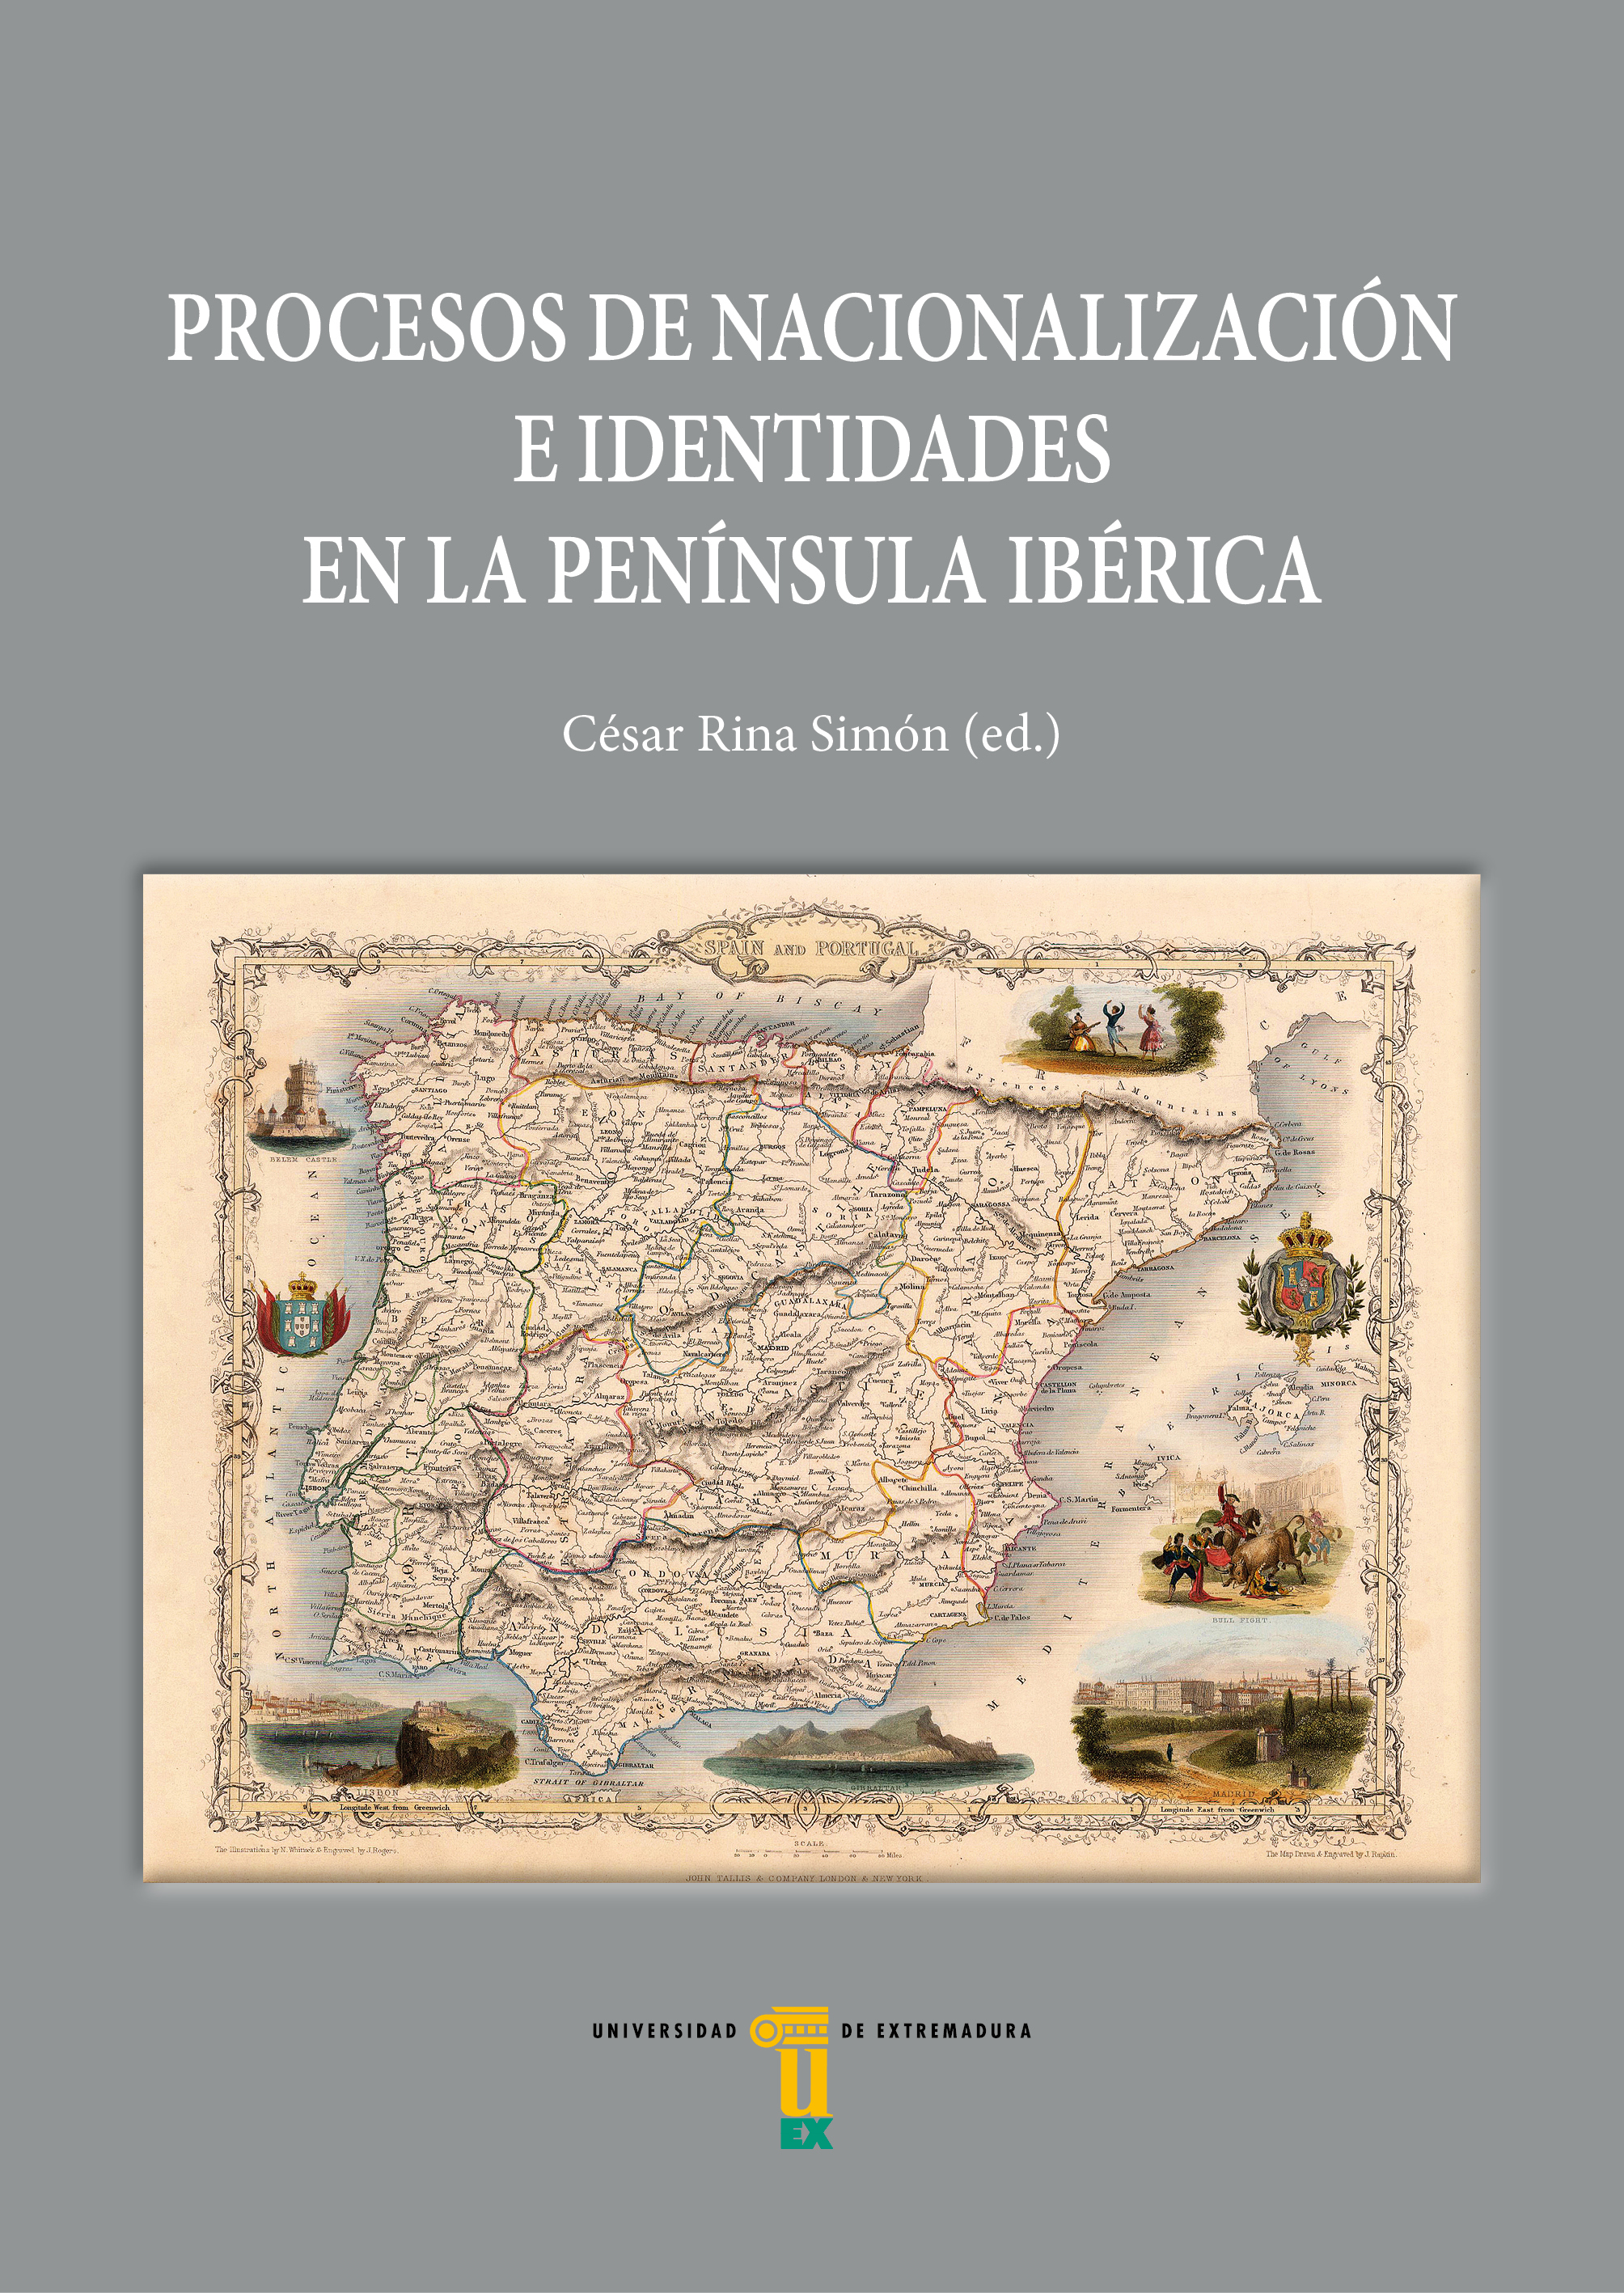 Imagen de portada del libro Procesos de nacionalización e identidades en la península ibérica